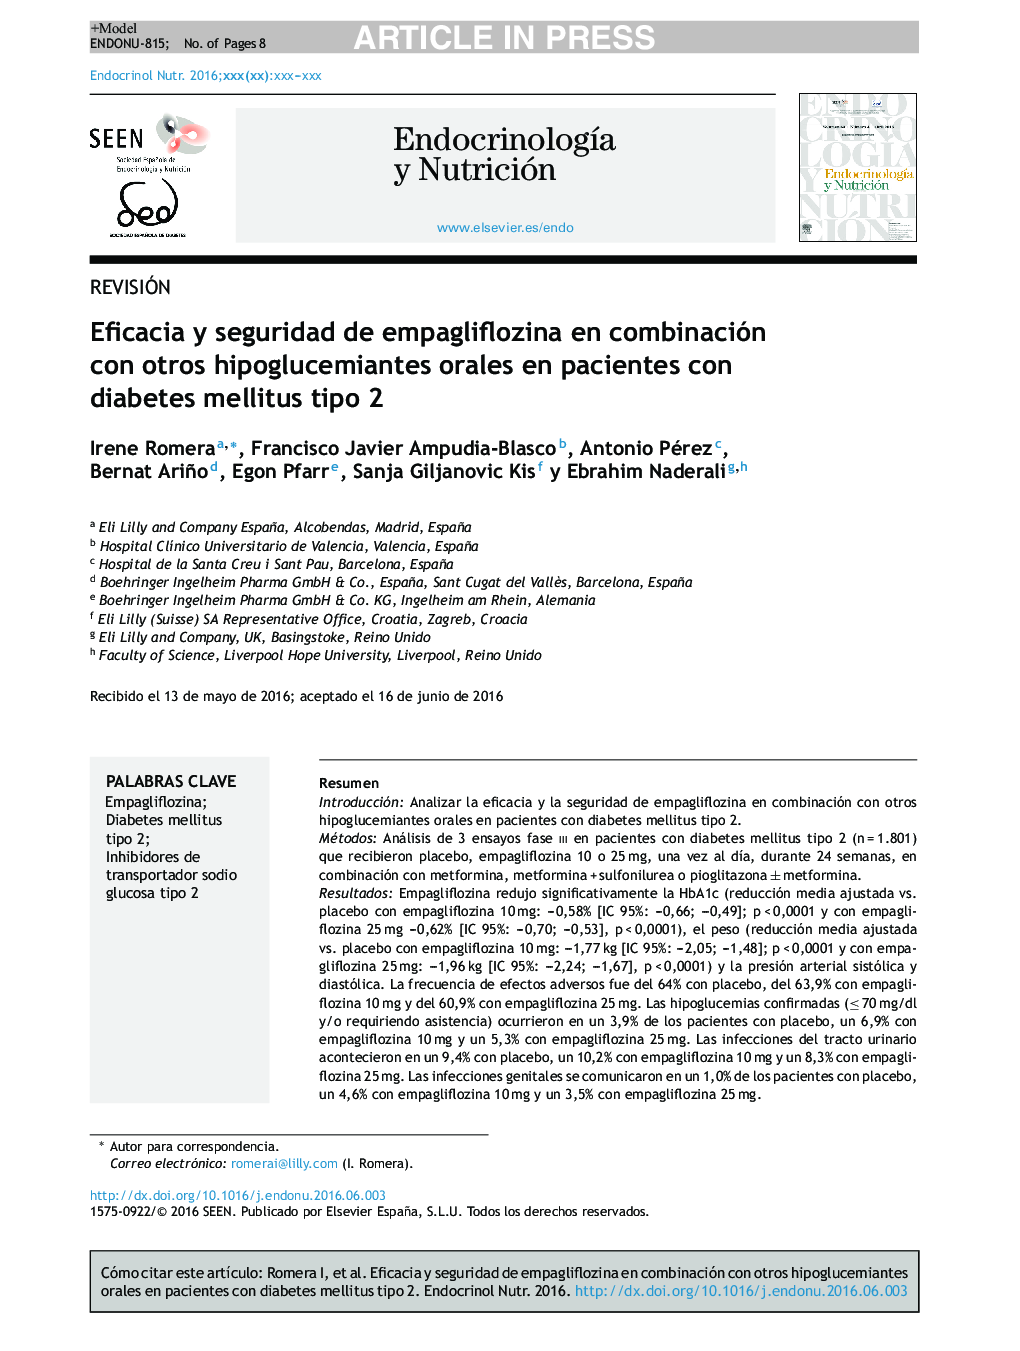 اثربخشی و ایمنی آمونگلیفلوسین در ترکیب با سایر عوامل هیپوگلیسمی خوراکی در بیماران مبتلا به دیابت نوع 2 